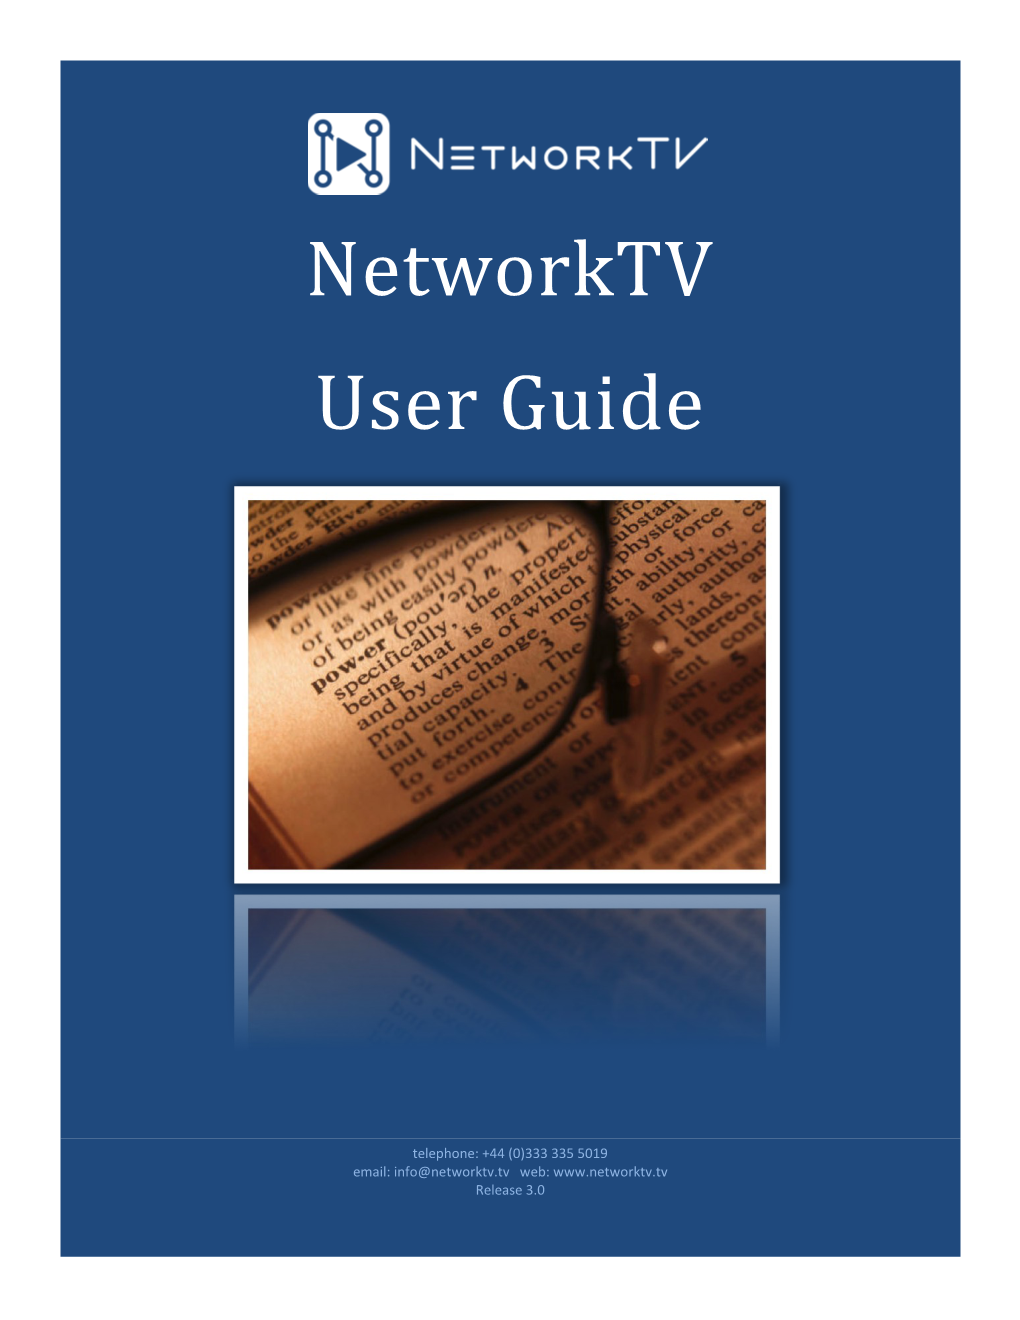 Networktv User Guide